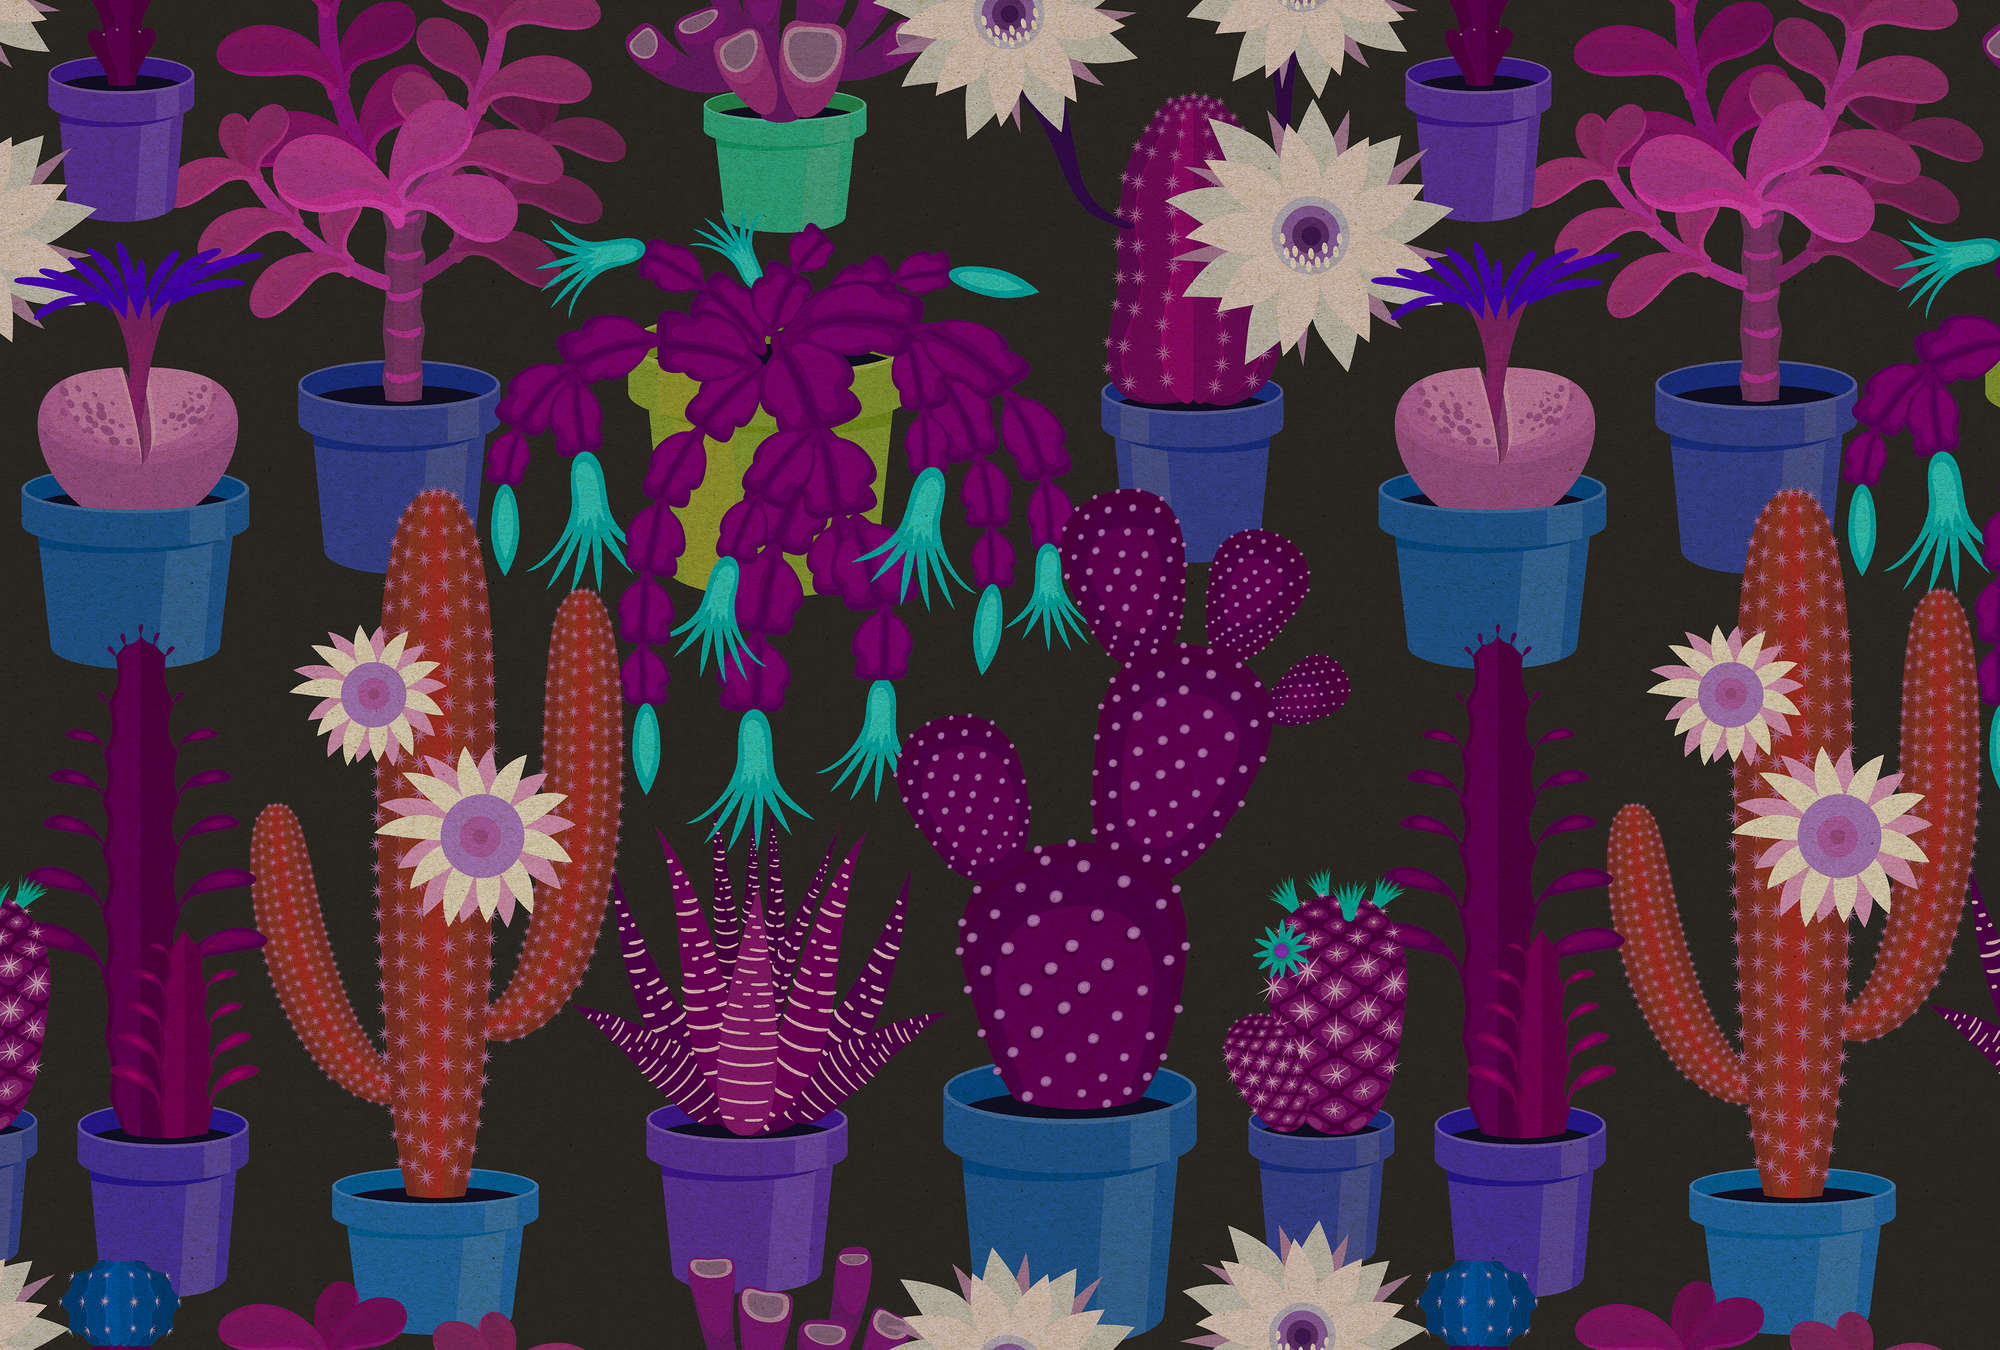             Cactus garden 1 - Papier peint structure carton avec cactus multicolores style bande dessinée - bleu, orange | Intissé lisse mat
        